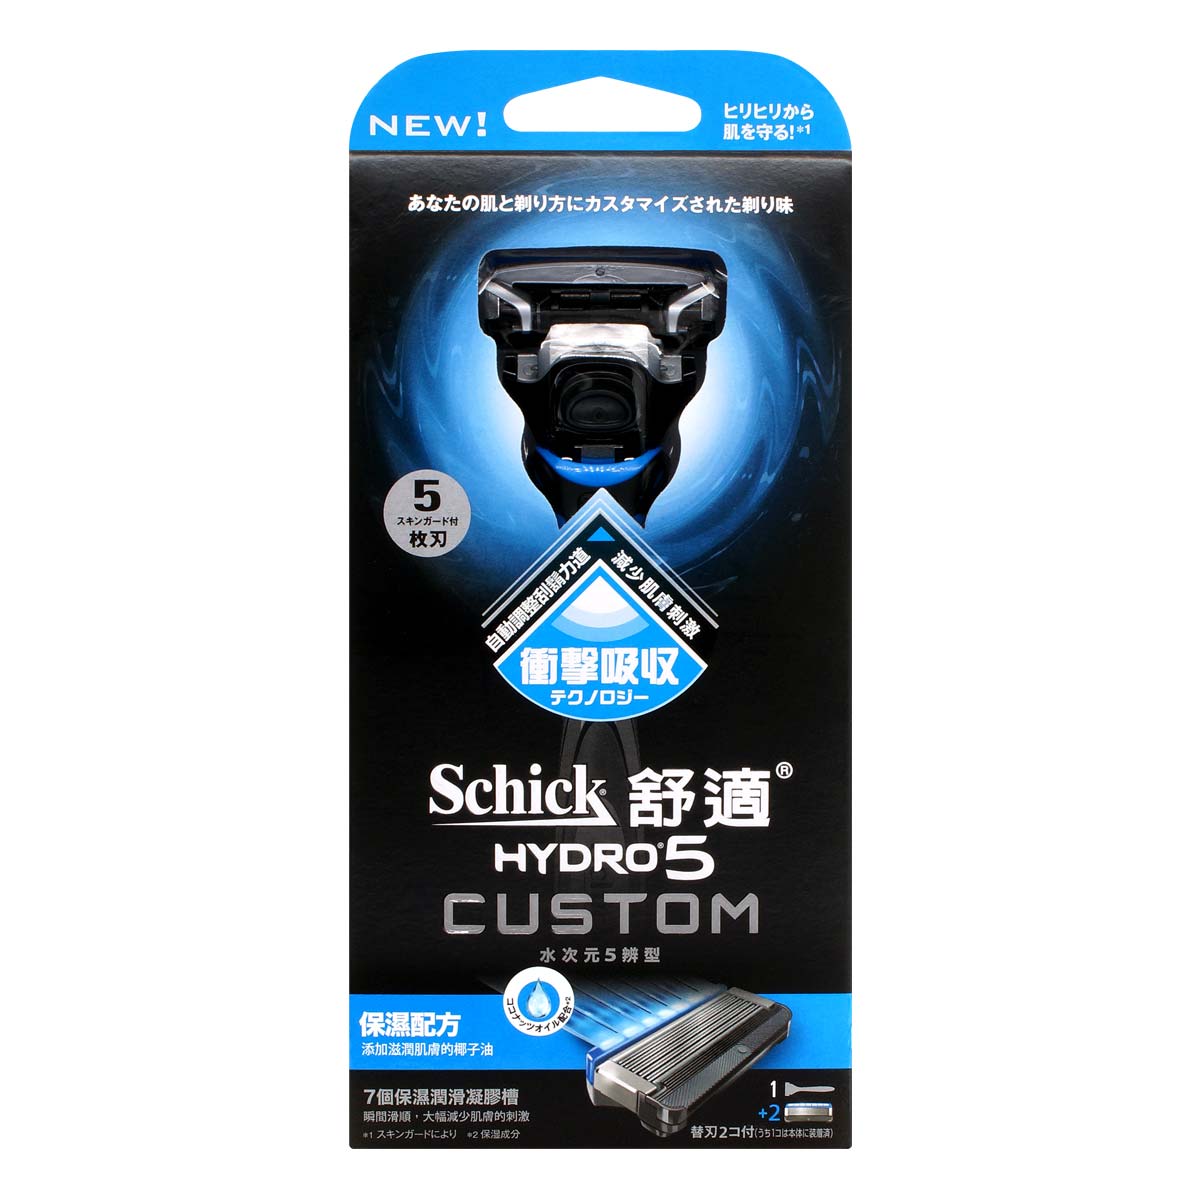 Schick 舒适 Hydro5 Custom 5 辨型剃须刀-保湿-p_2